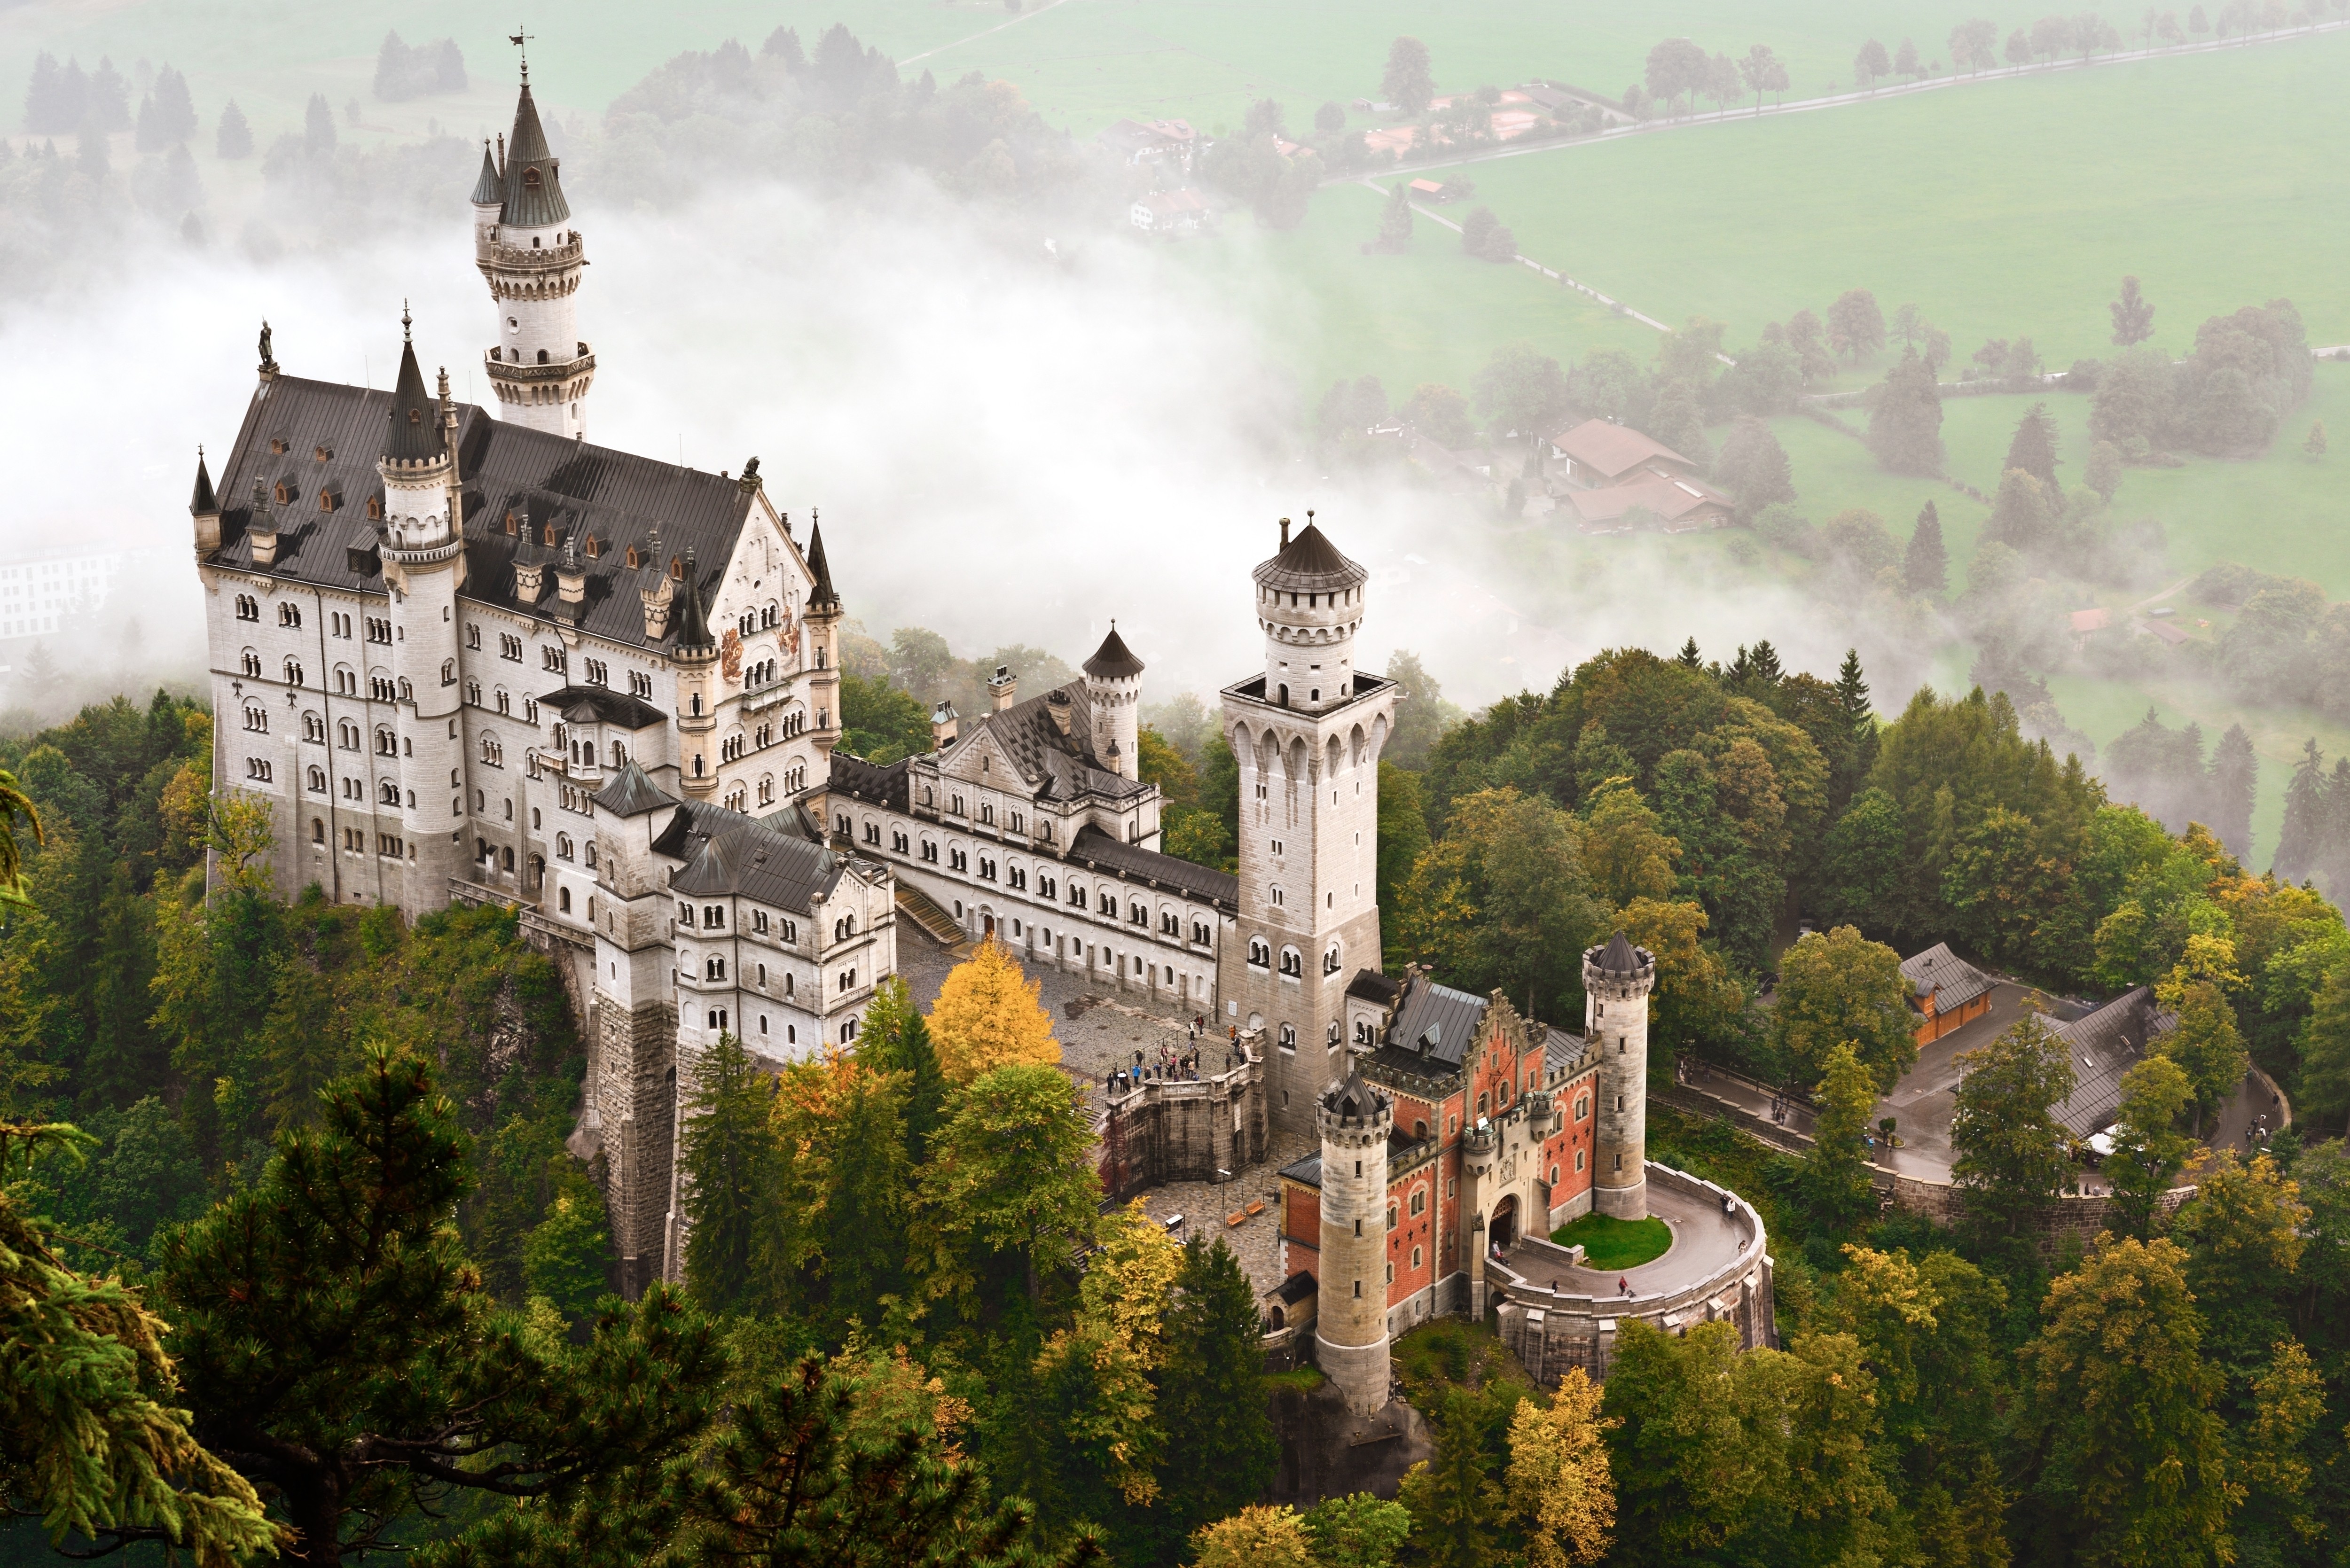 Man Made Neuschwanstein Castle 4k Ultra HD Wallpaper